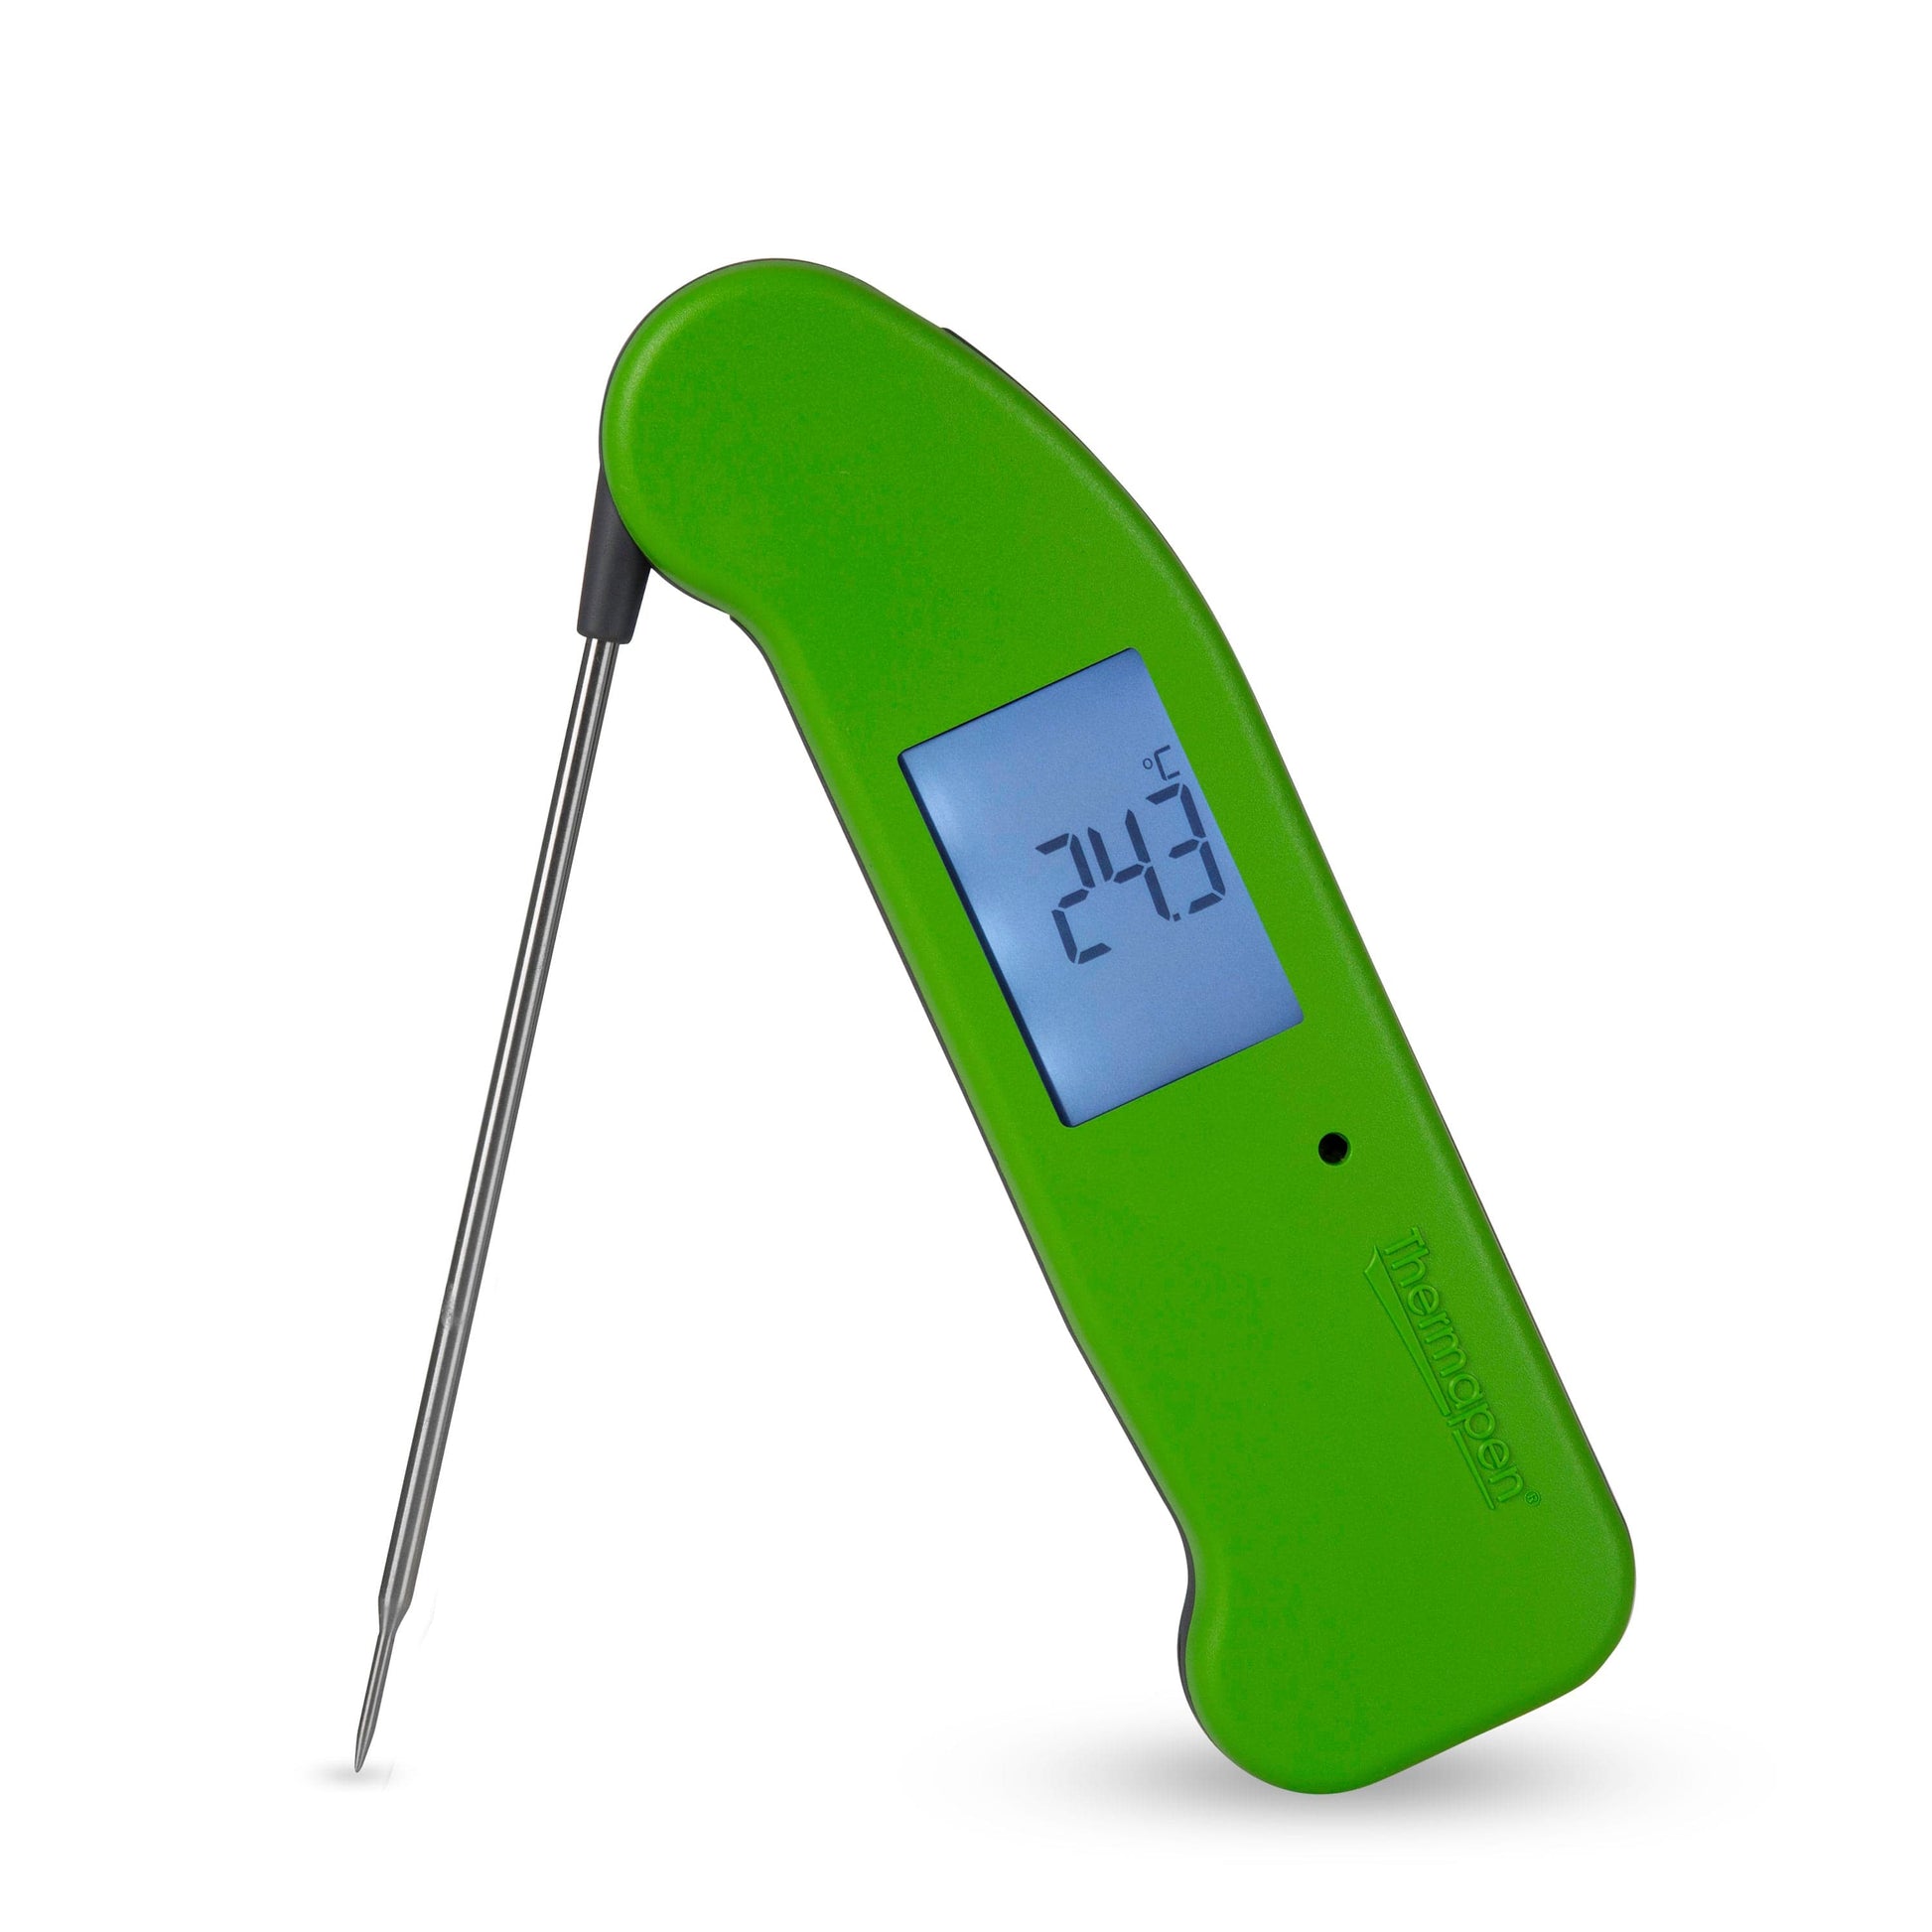 un thermomètre numérique Thermapen® One vert de Thermometre.fr sur fond blanc.